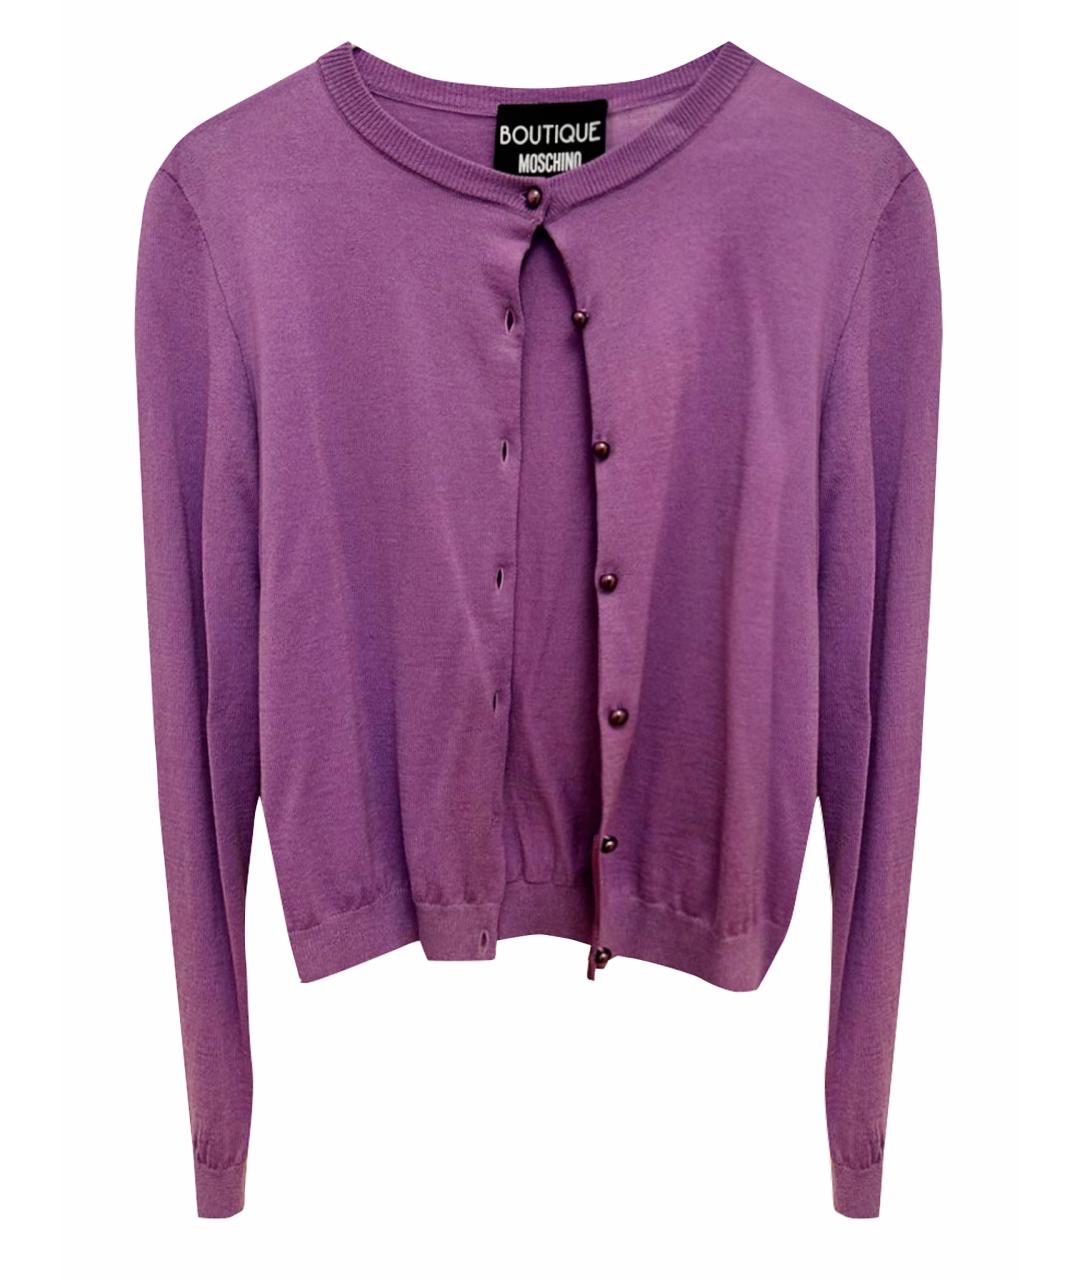 BOUTIQUE MOSCHINO Фиолетовый шерстяной жакет/пиджак, фото 1